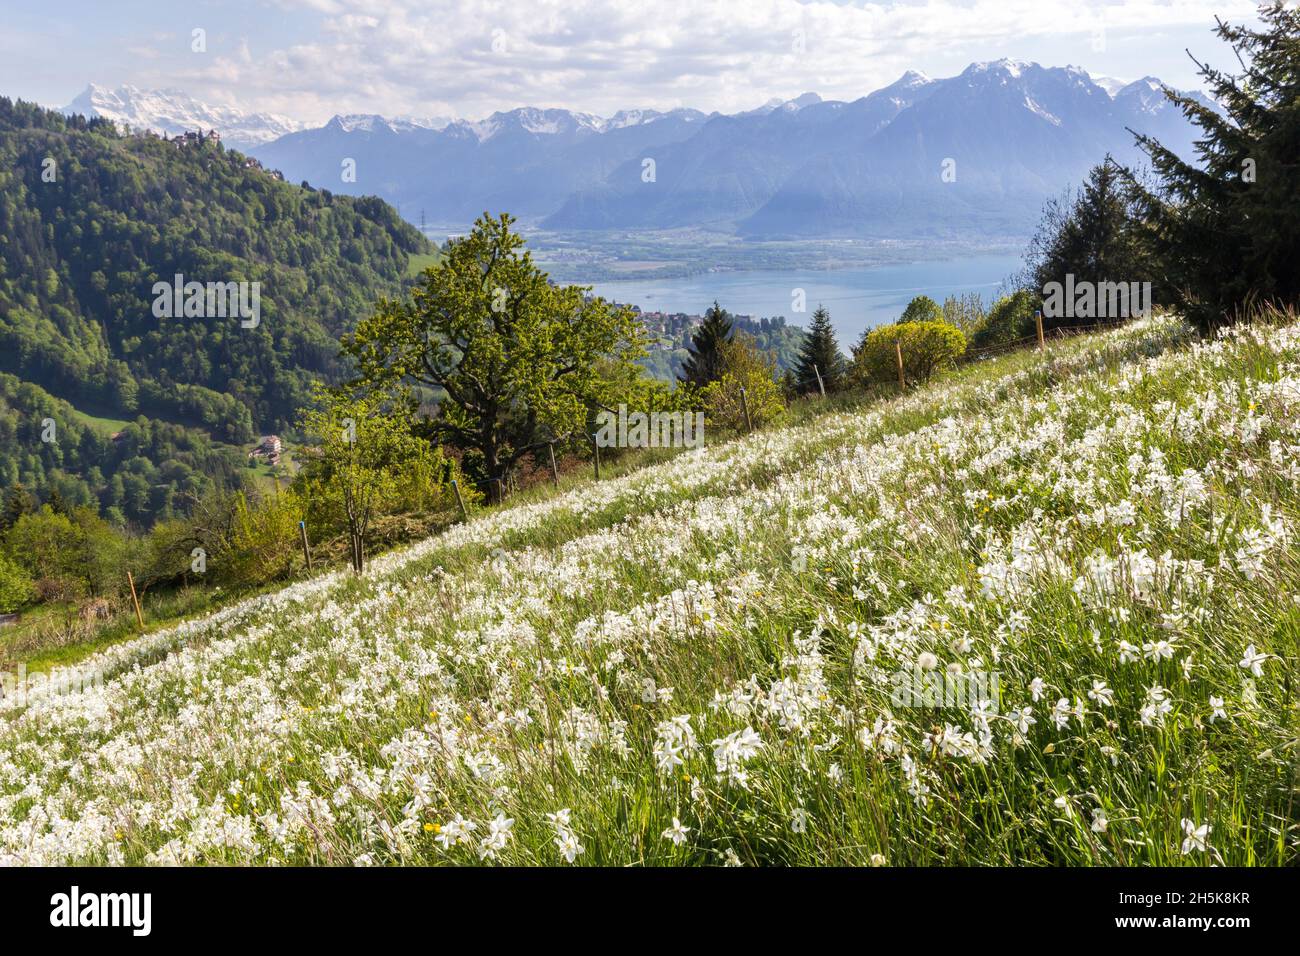 Alpi svizzere con fiore di narciso selvatico in fiore (narcissus poeticus) in riviera di Montreux con il lago di Ginevra sullo sfondo Foto Stock